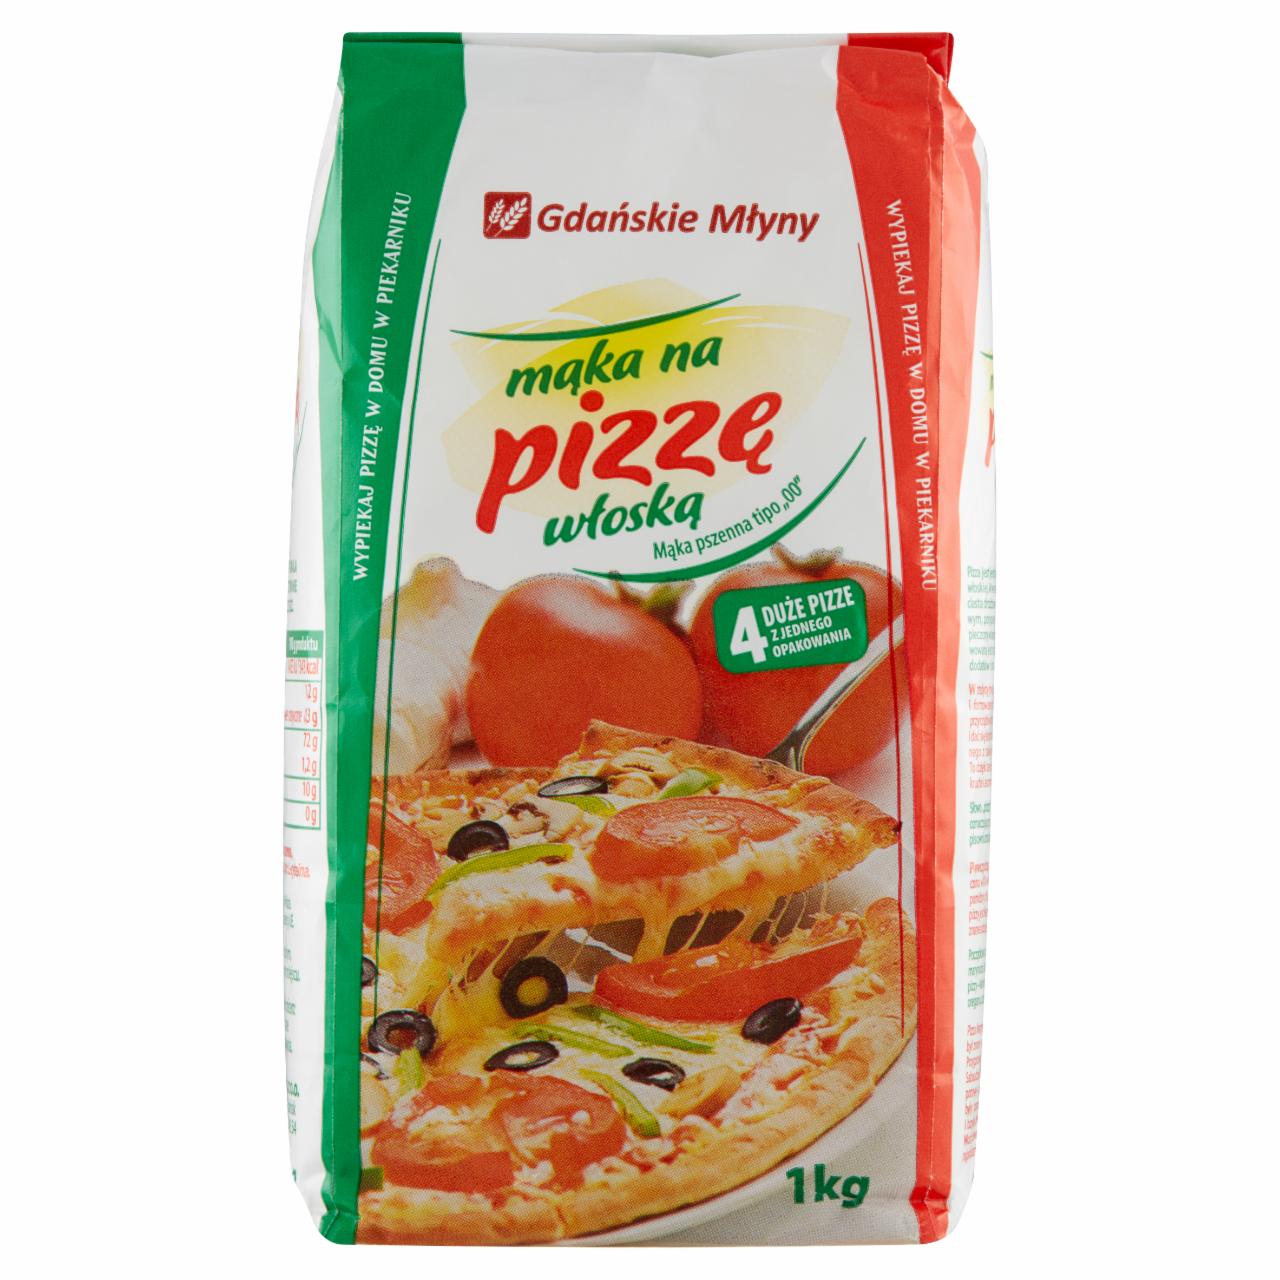 Zdjęcia - Mąka pszenna na pizzę włoską Gdańskie Młyny